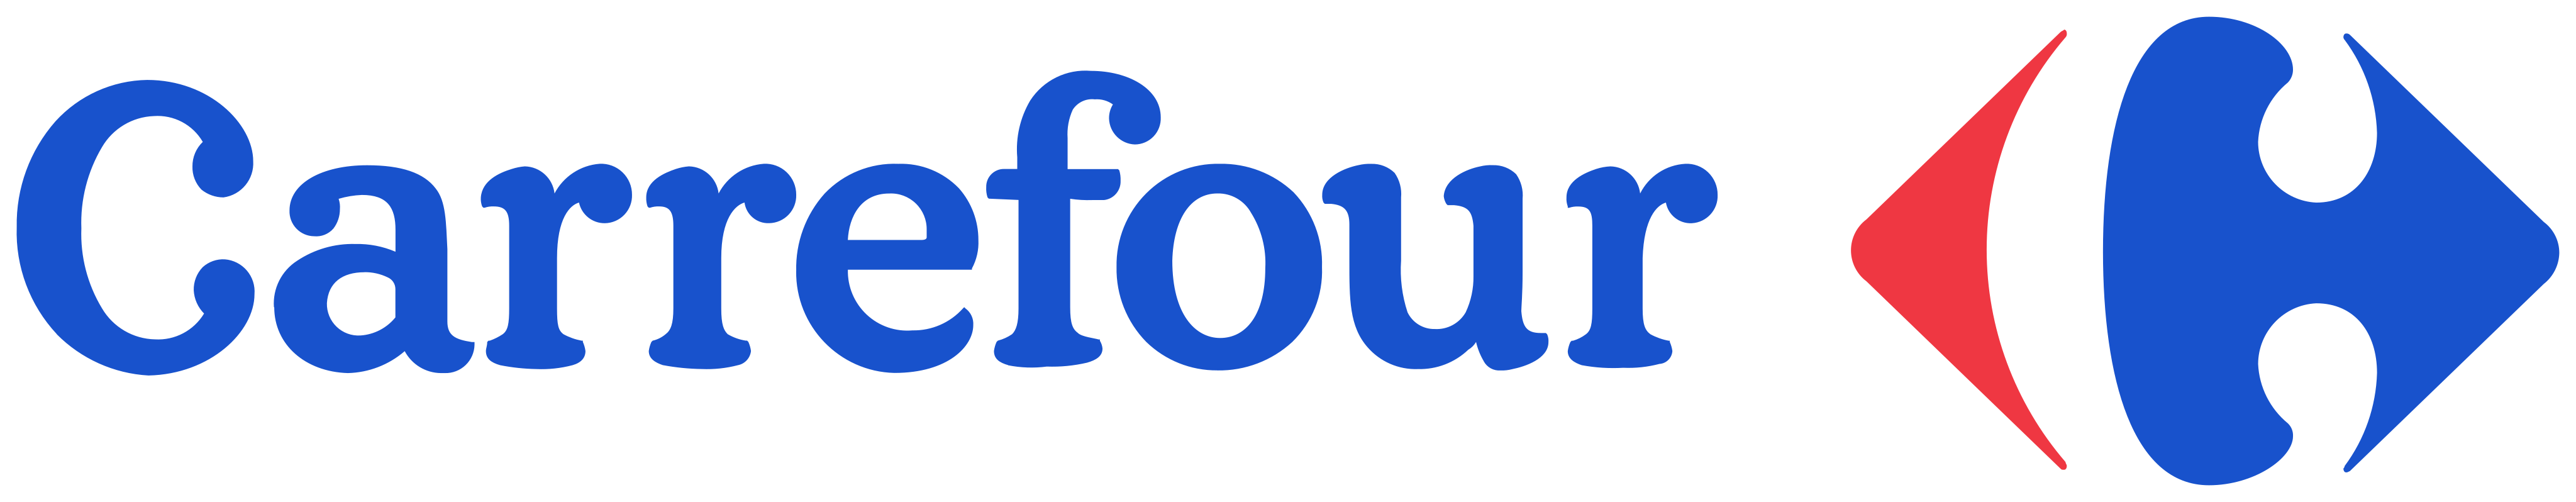 carrefour-logo-1